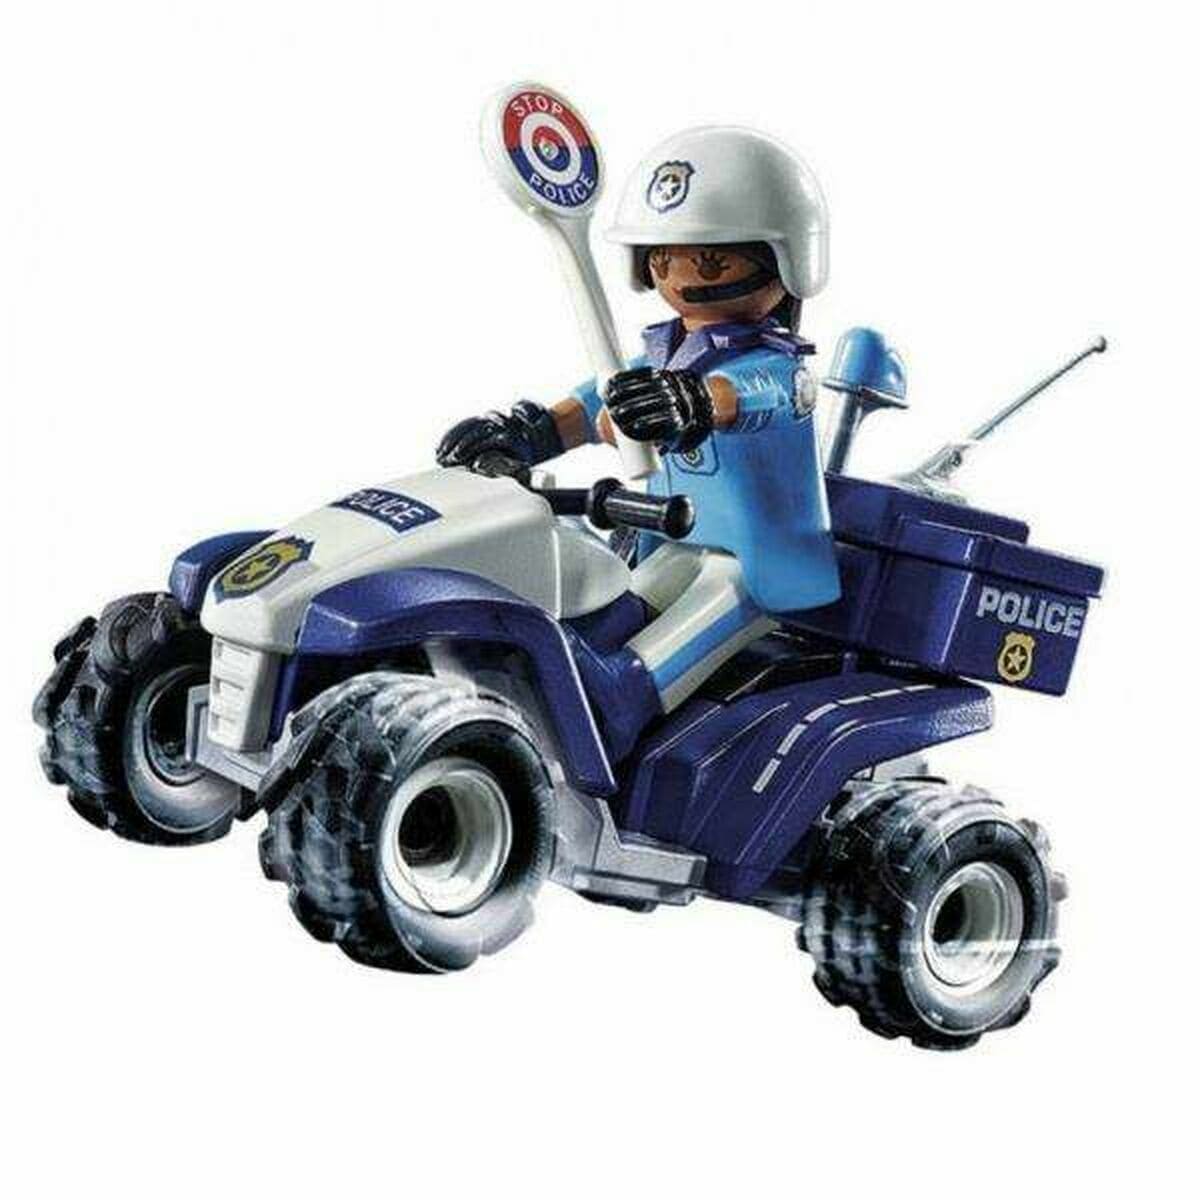 Playmobil Spielzeug | Kostüme > Spielzeug und Spiele > Weiteres spielzeug Spielset Fahrzeuge Playmobil Speed Quad City Action 71092 Polizei (21 pcs)